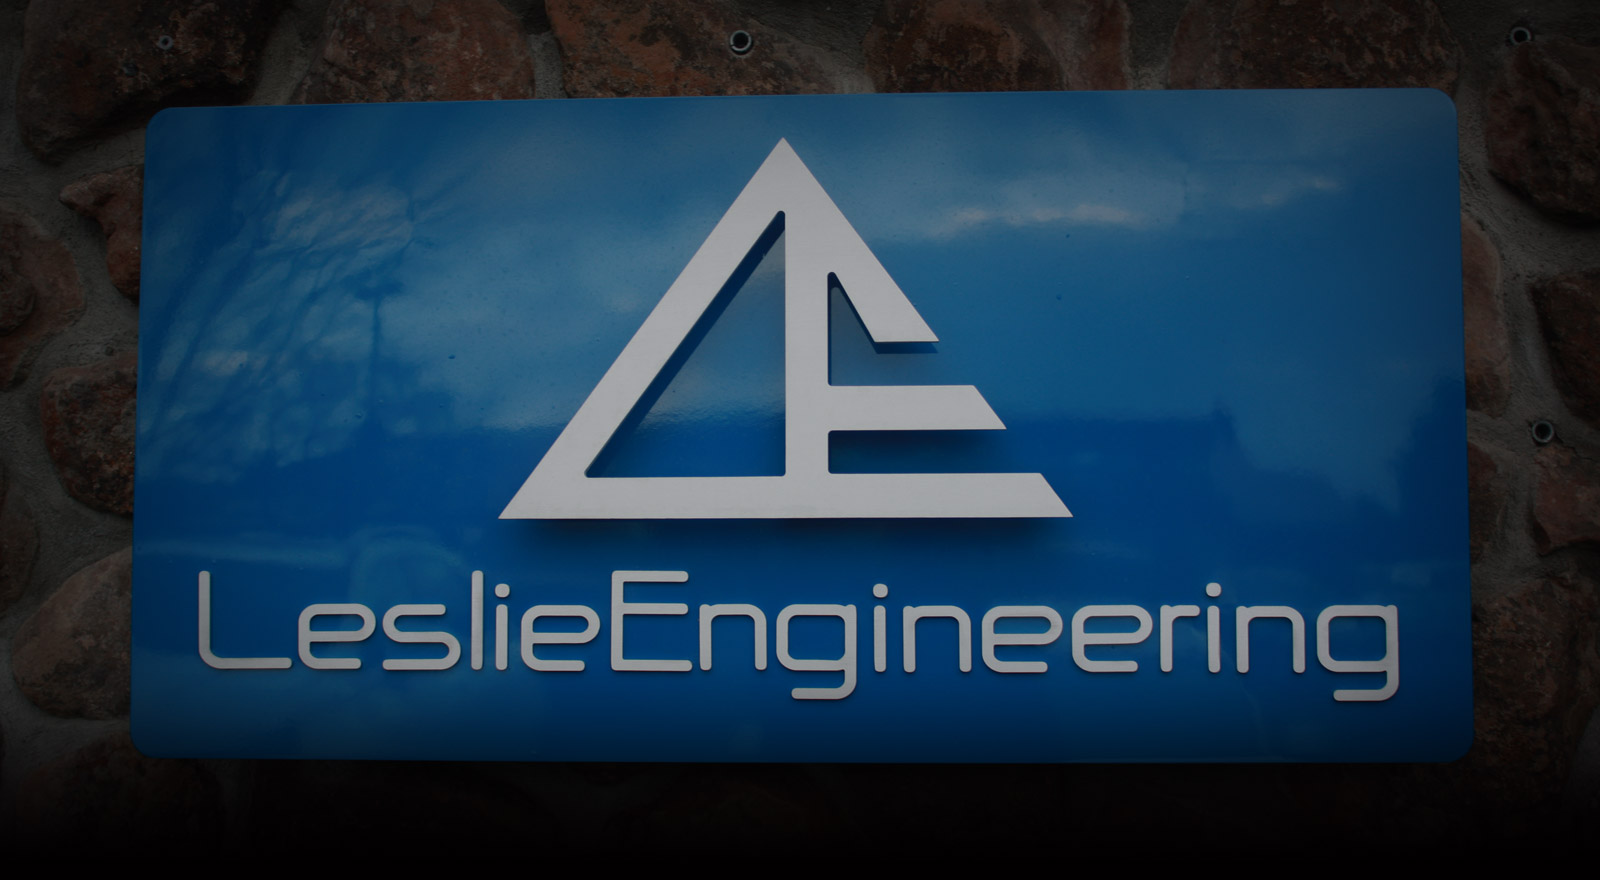 Leslie Engineering